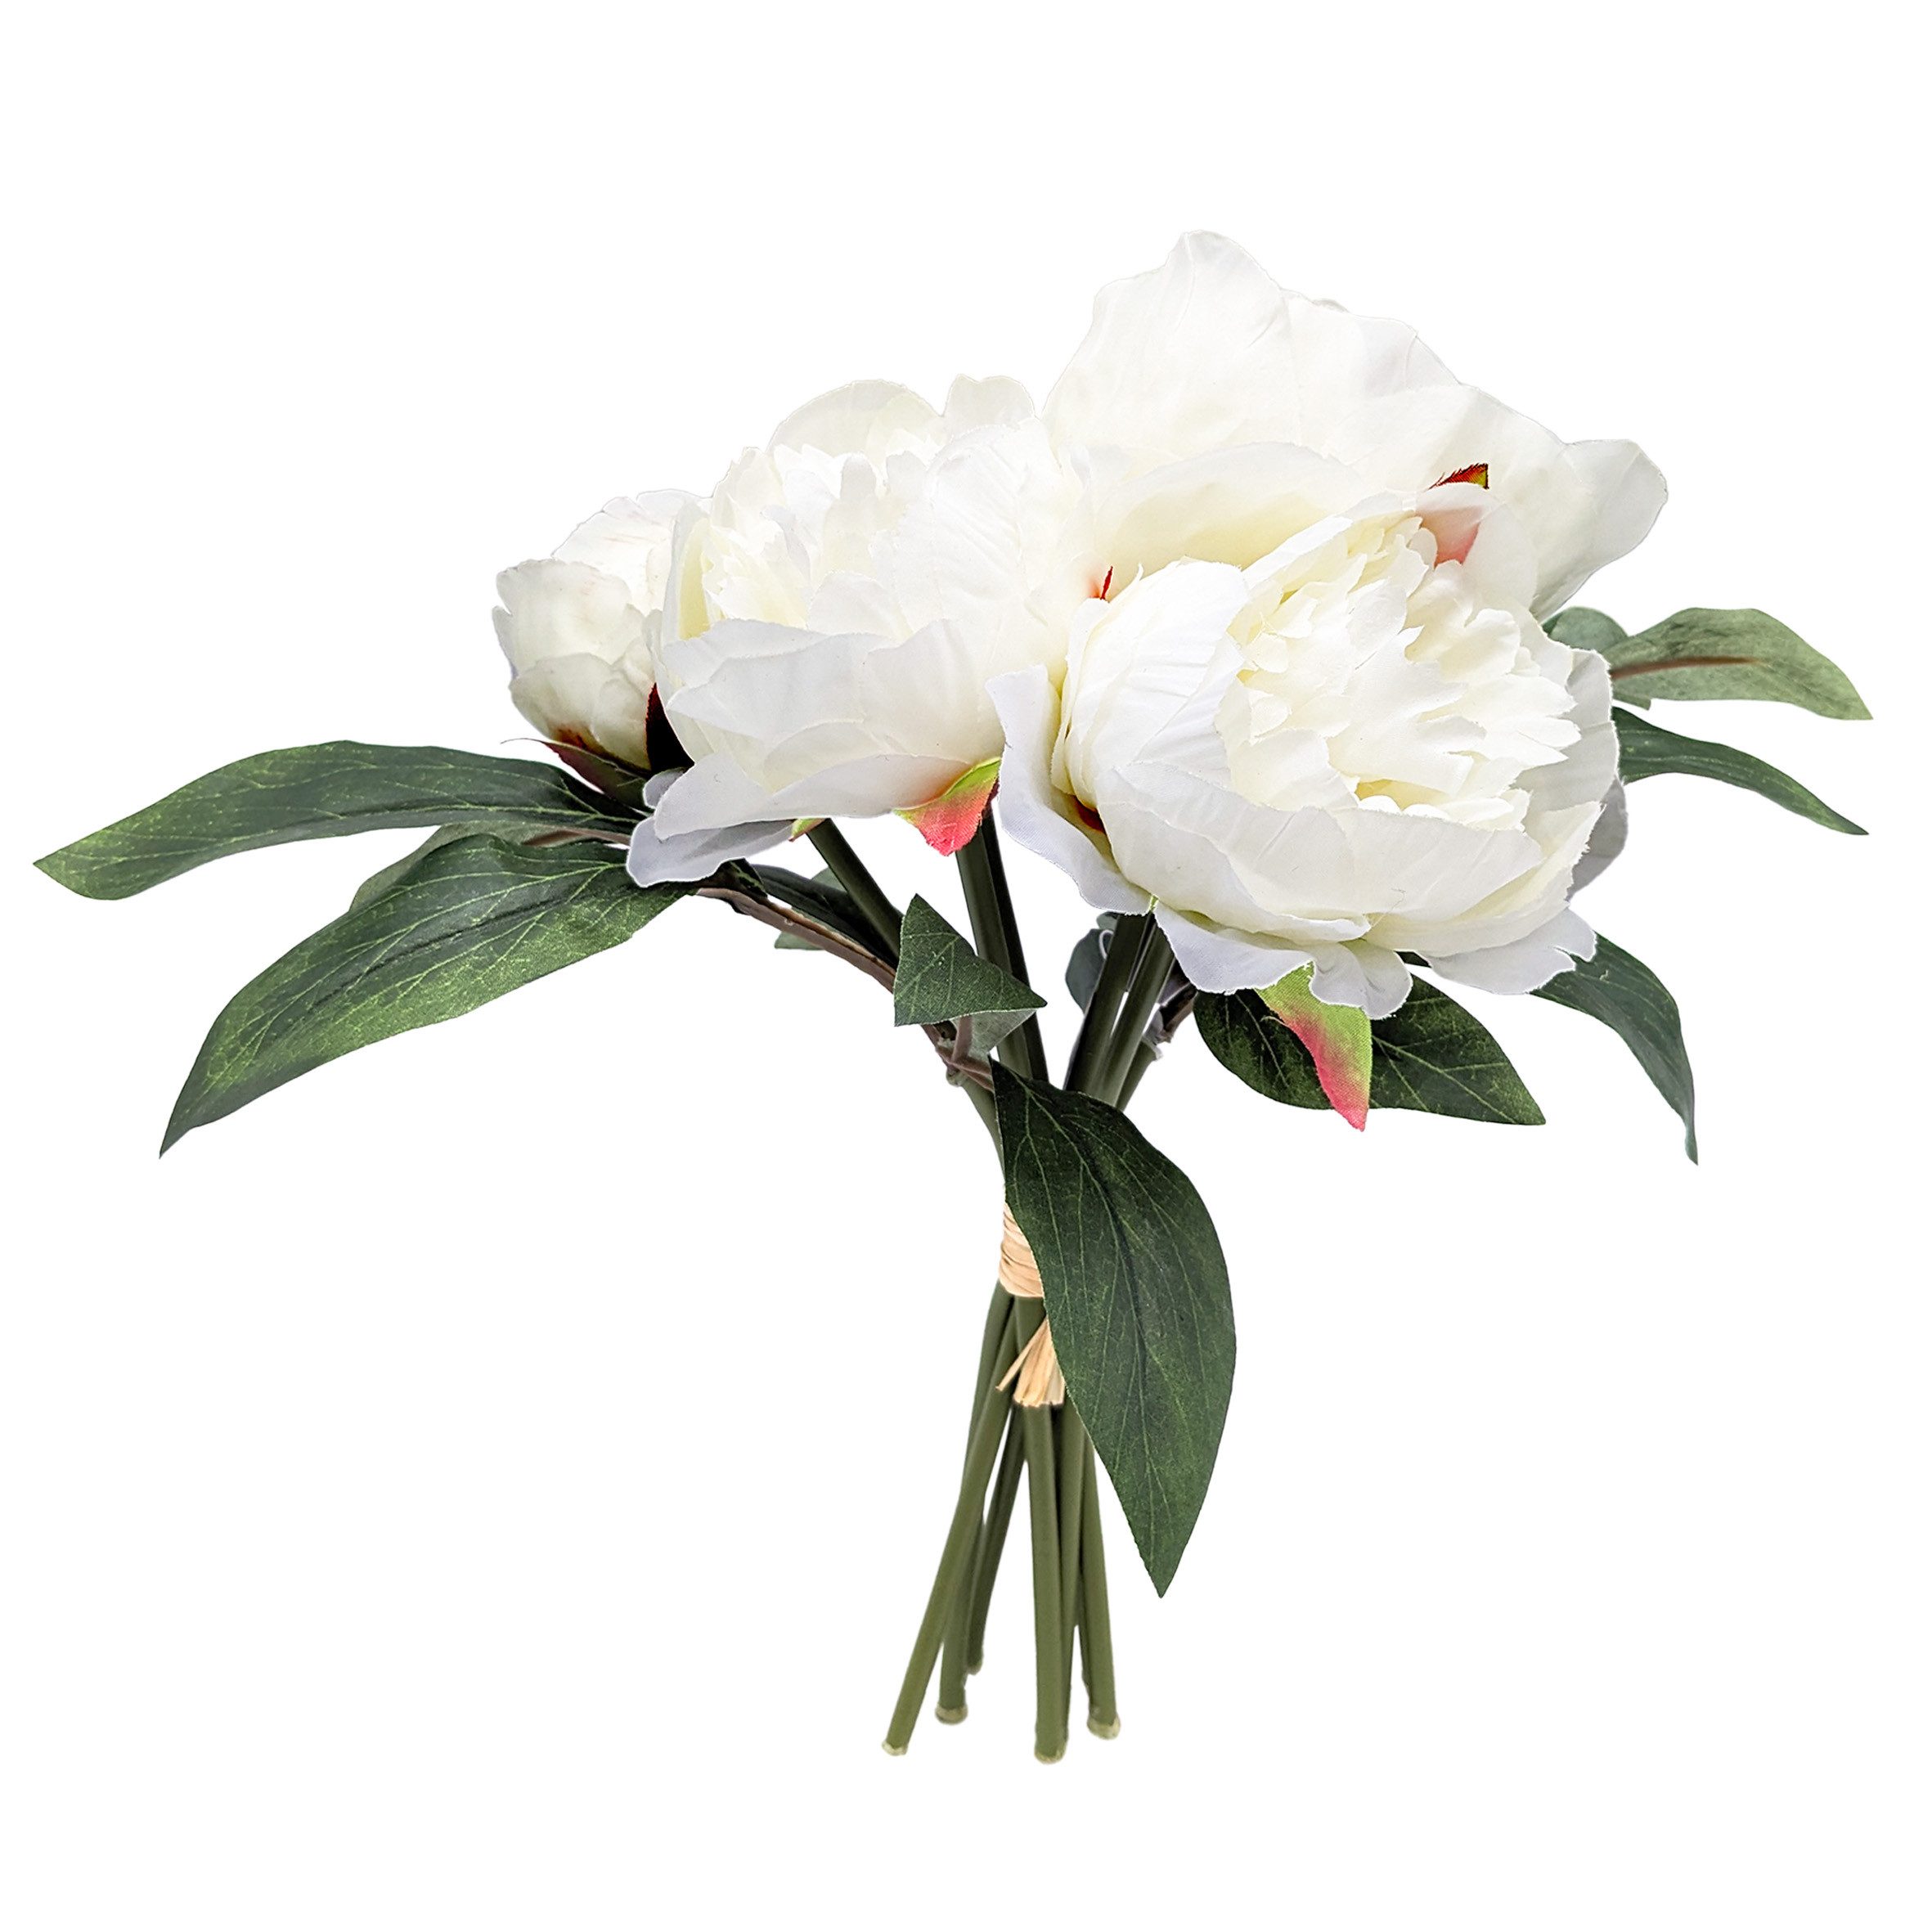 Kunstblumenstrauß Pfingstrosen Strauß künstlich 30 cm Pfingstrose, Spetebo, Höhe 30 cm, Deko Blumenstrauß gebunden